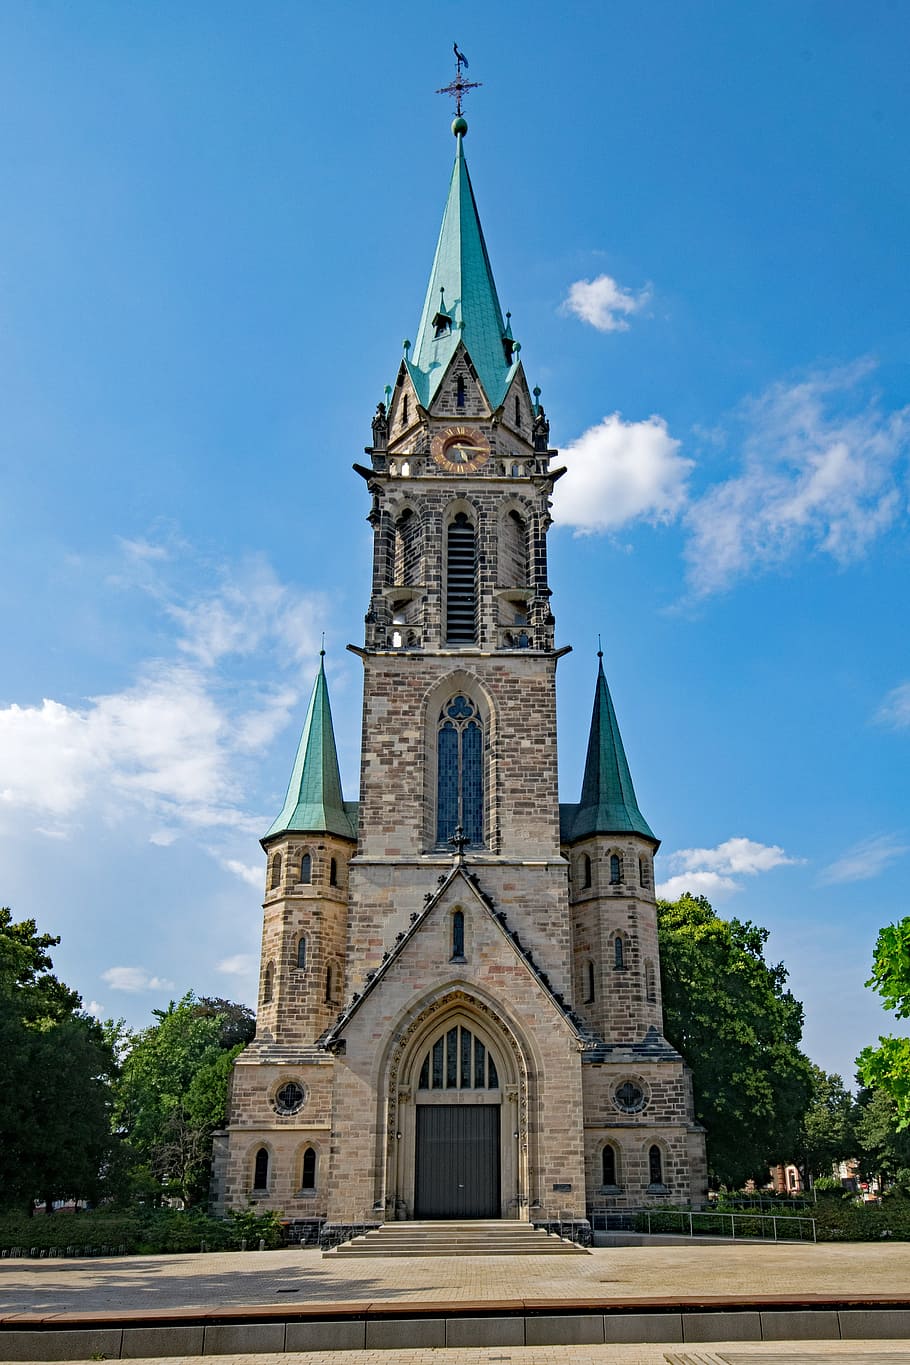 セントジョンズ教会, ダルムシュタット, ヘッセン, ドイツ, 興味のある場所, 教会, 建物, 信仰, 宗教, 建築